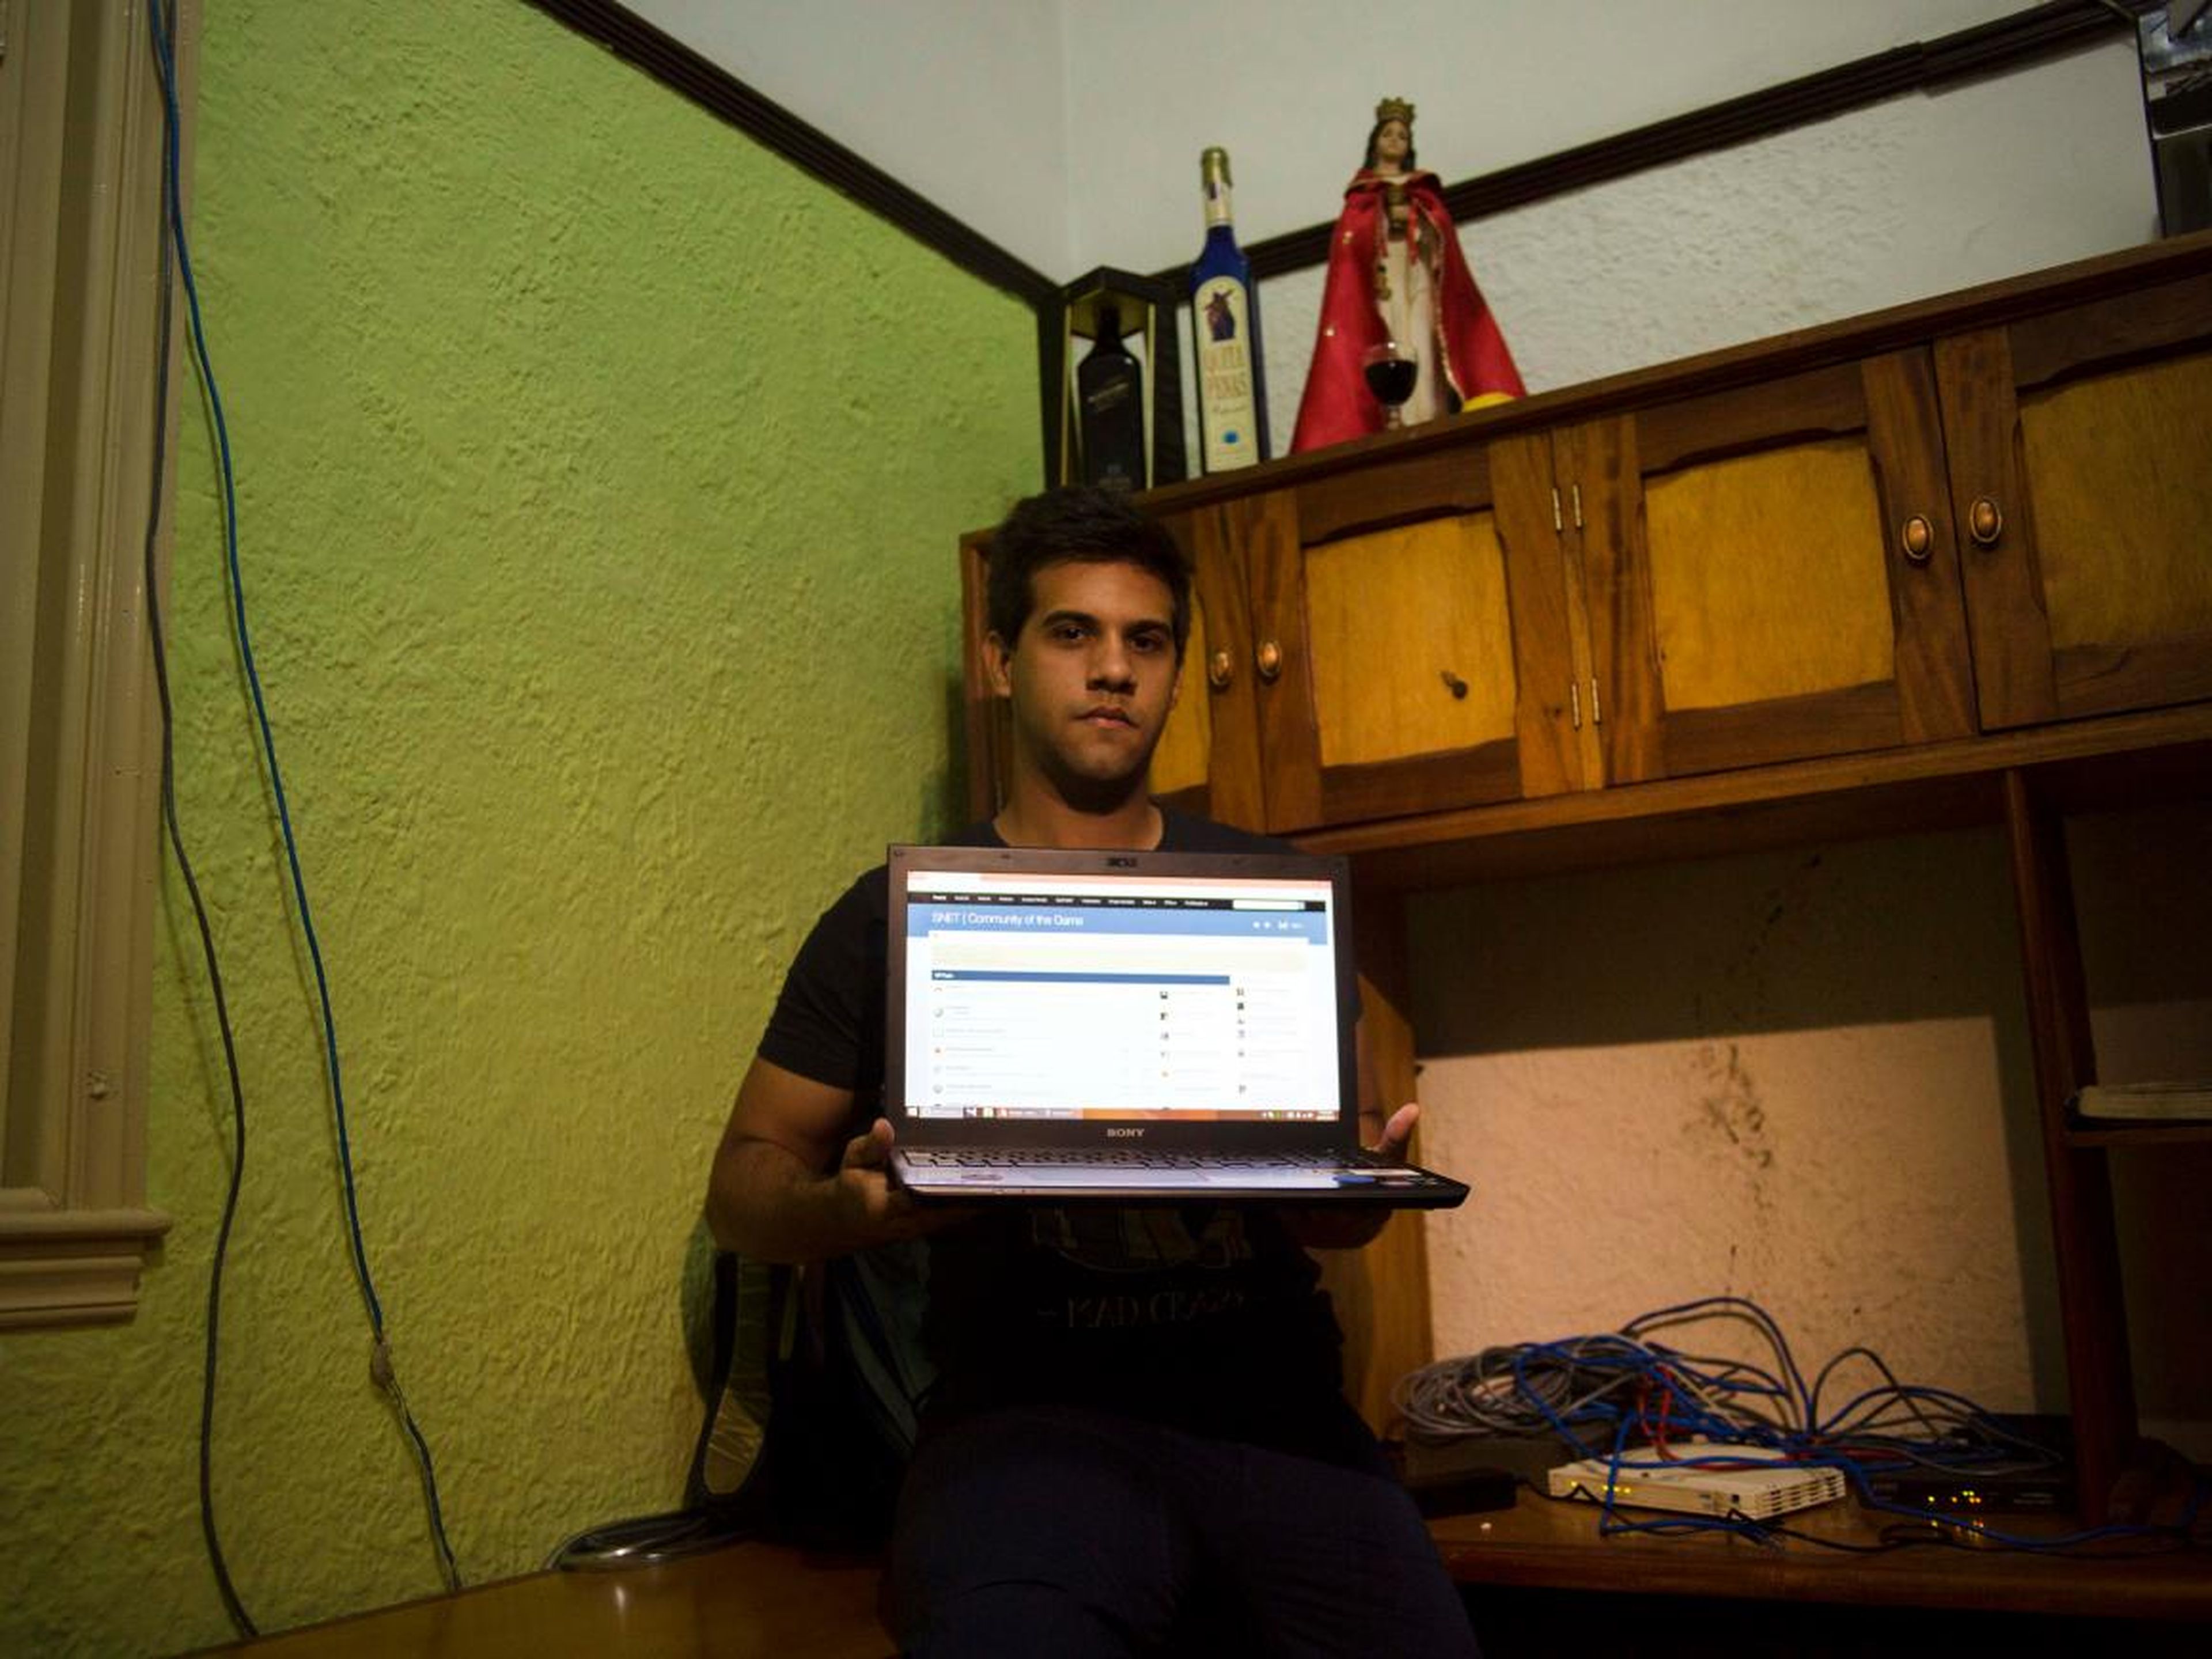 Rafael Antonio Broche Moreno posa con su ordenador, módem y su red por cable en su casa de La Habana.